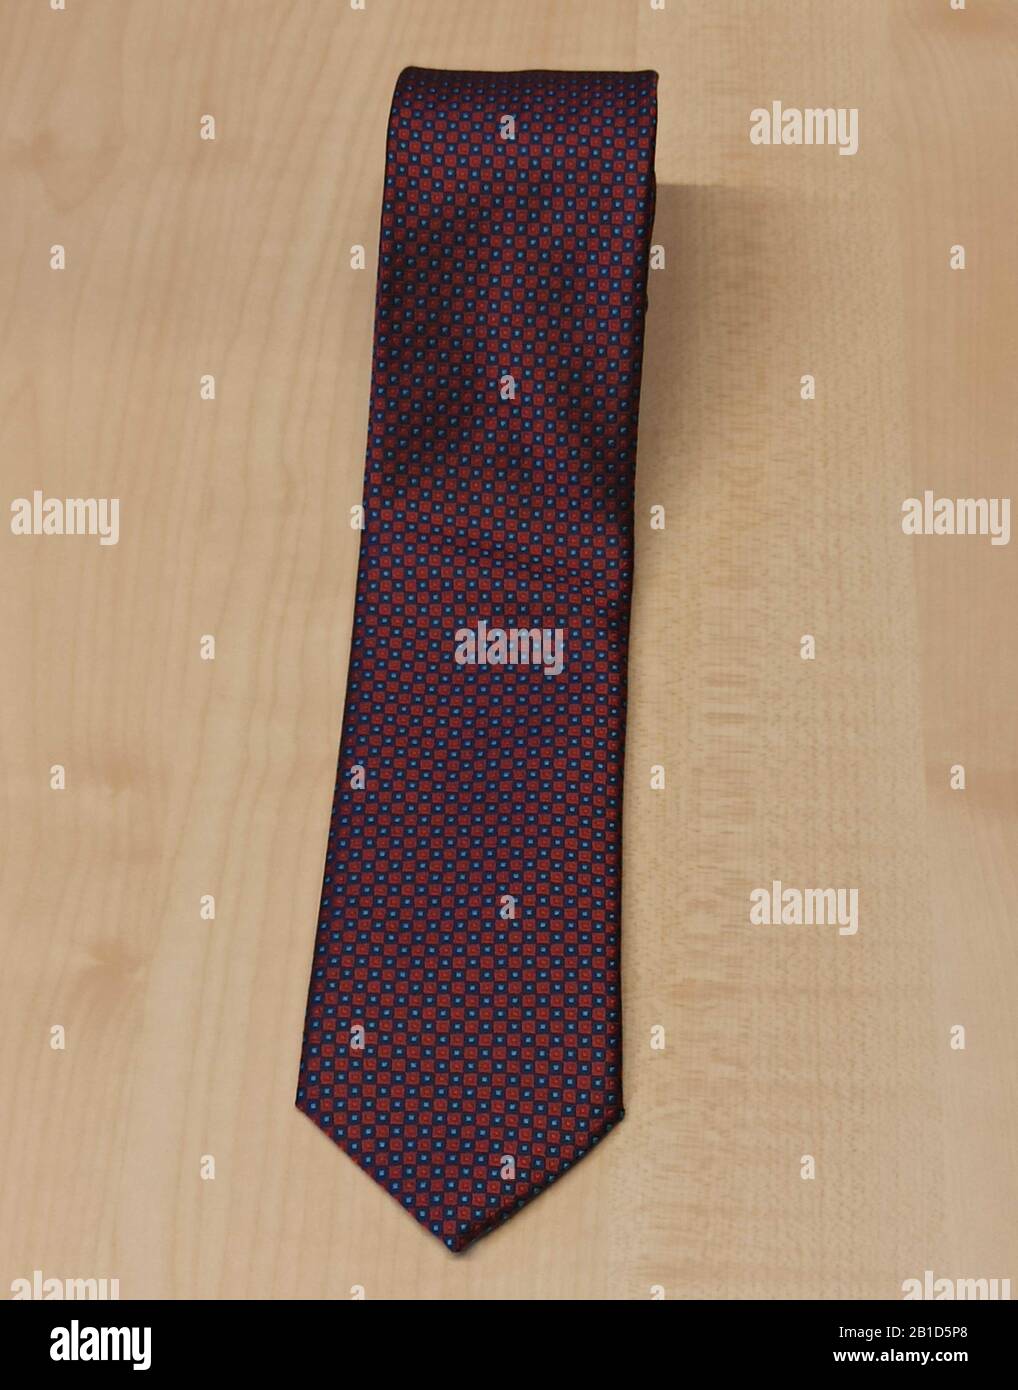 Ohne Krawatte Stockfotos und -bilder Kaufen - Alamy